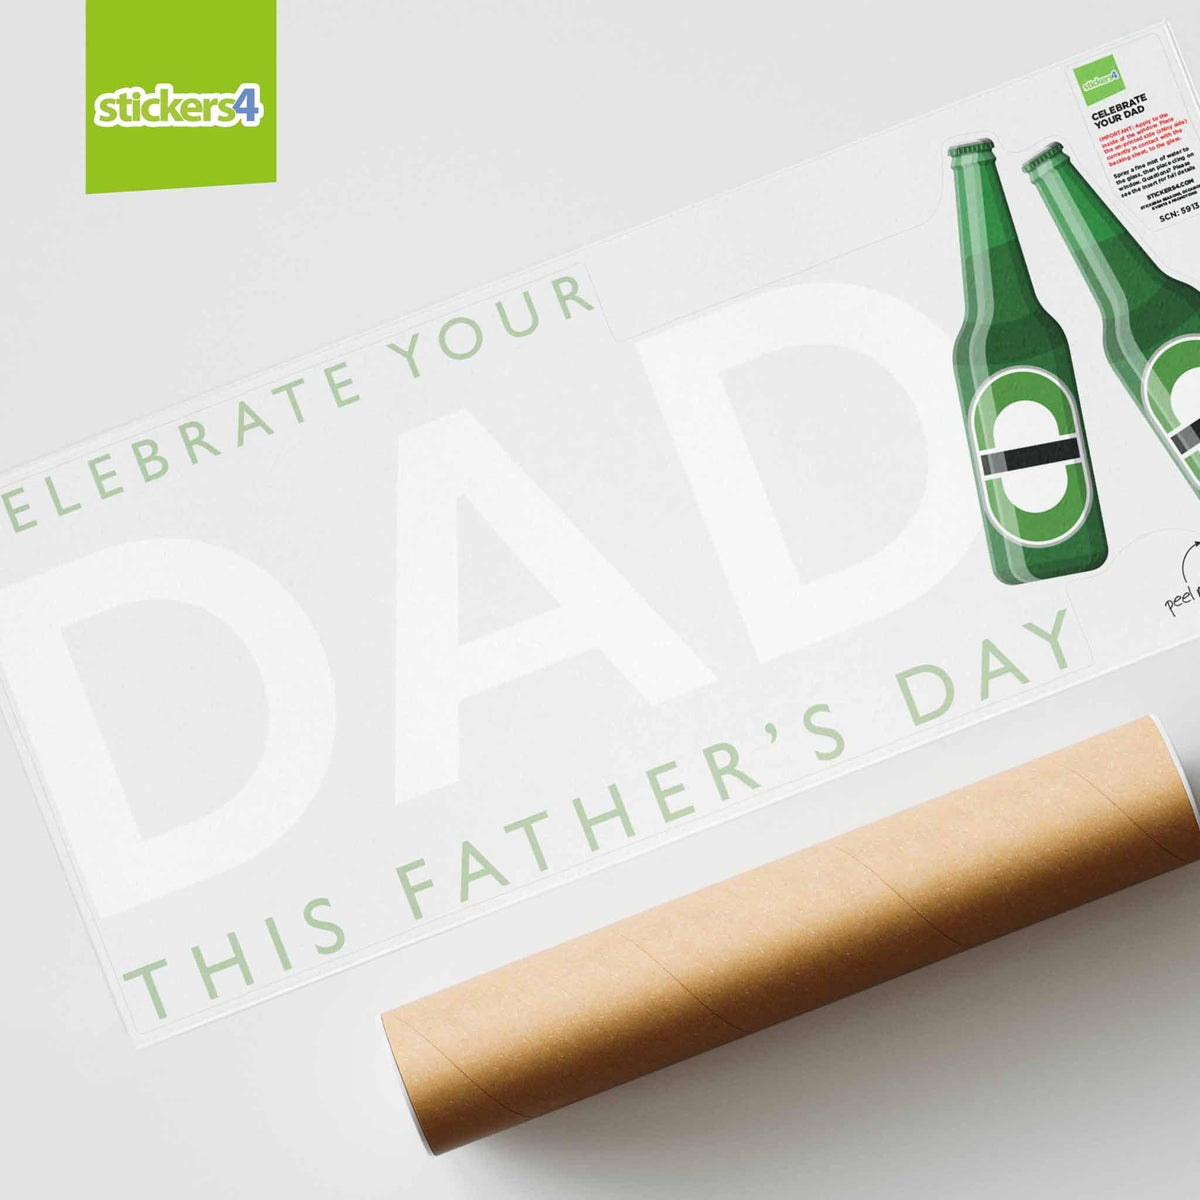 Celebrate Your Dad Window Sticker Father&#39;s Day Window Display